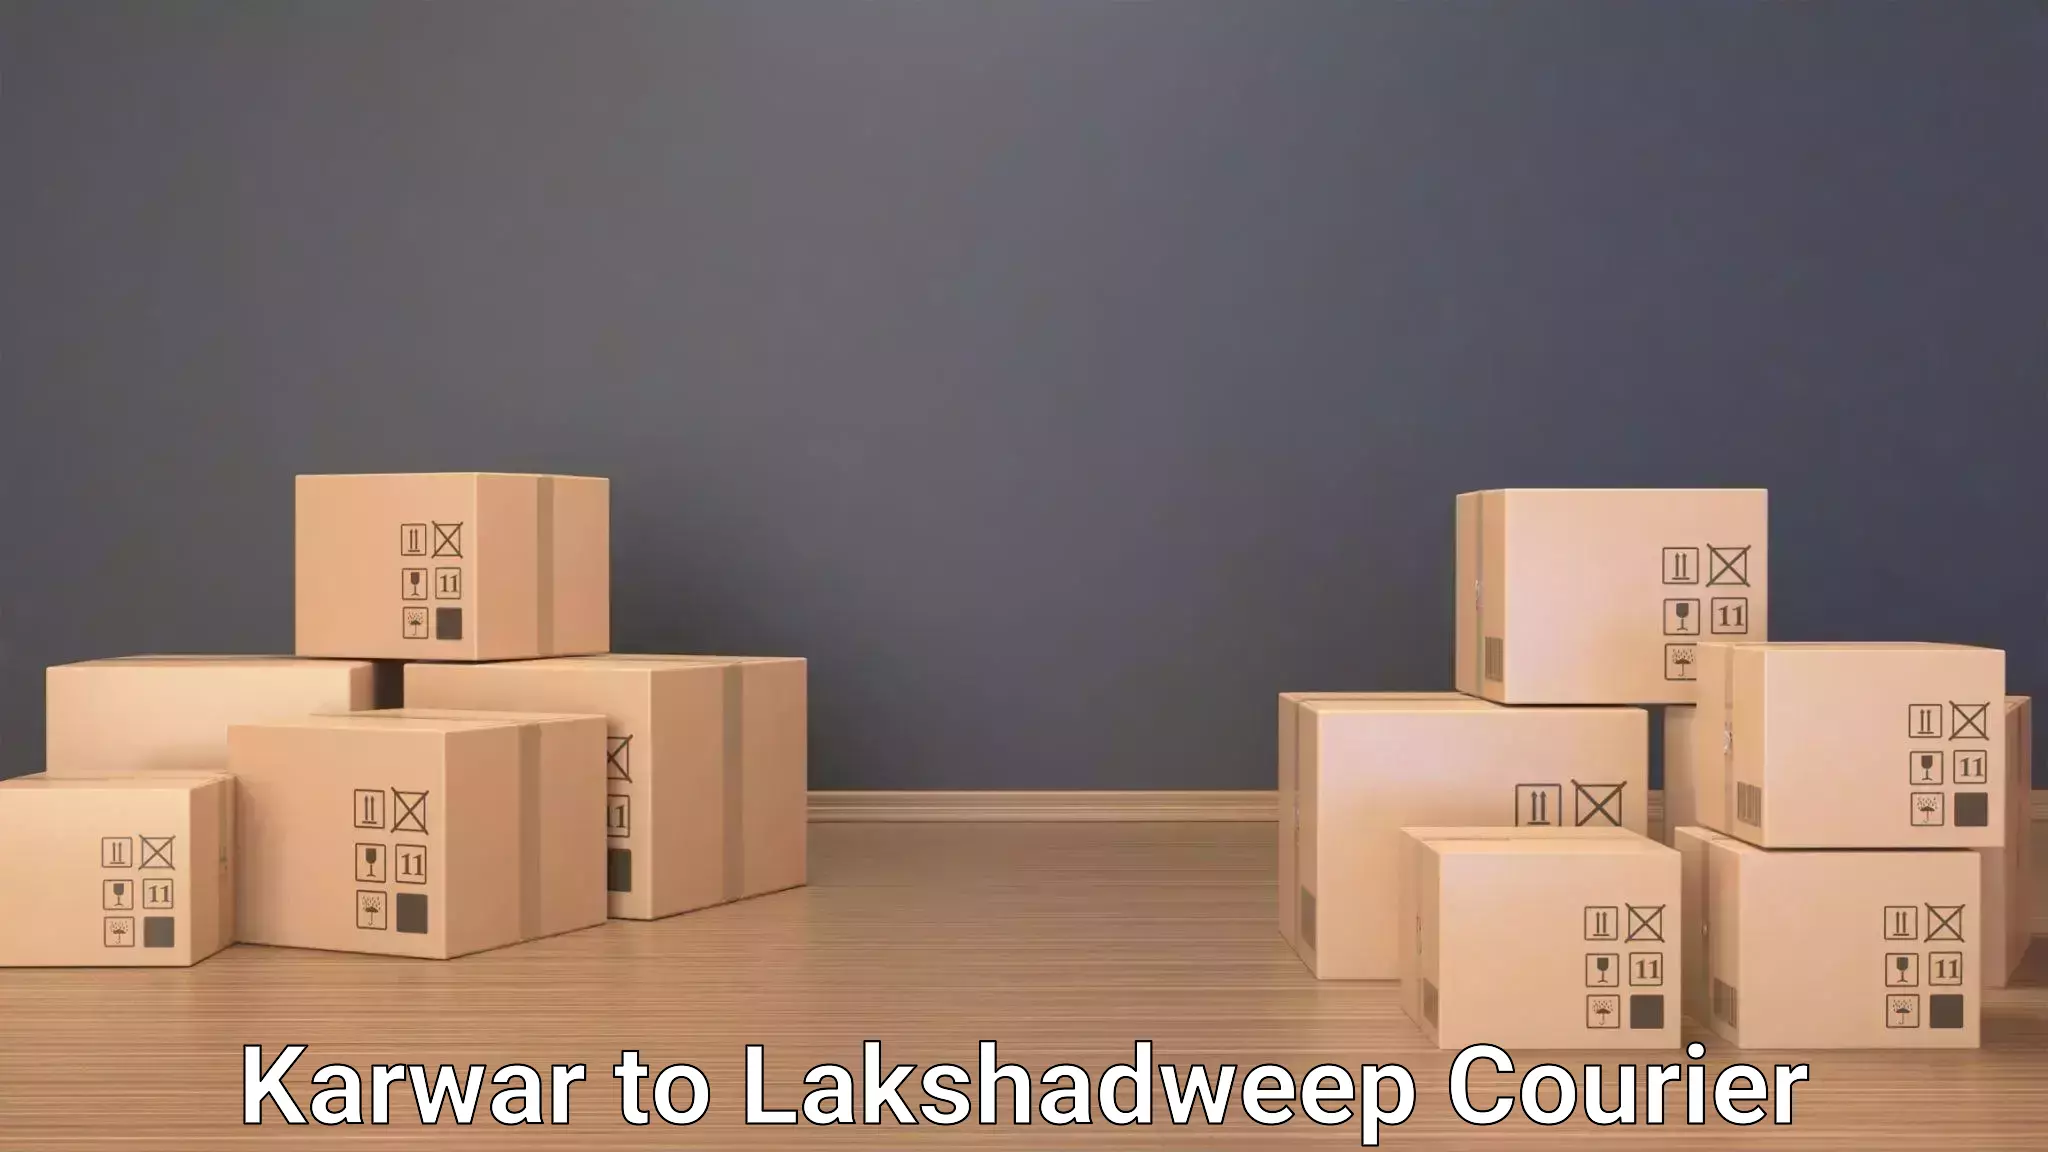 Luggage shipment tracking Karwar to Lakshadweep